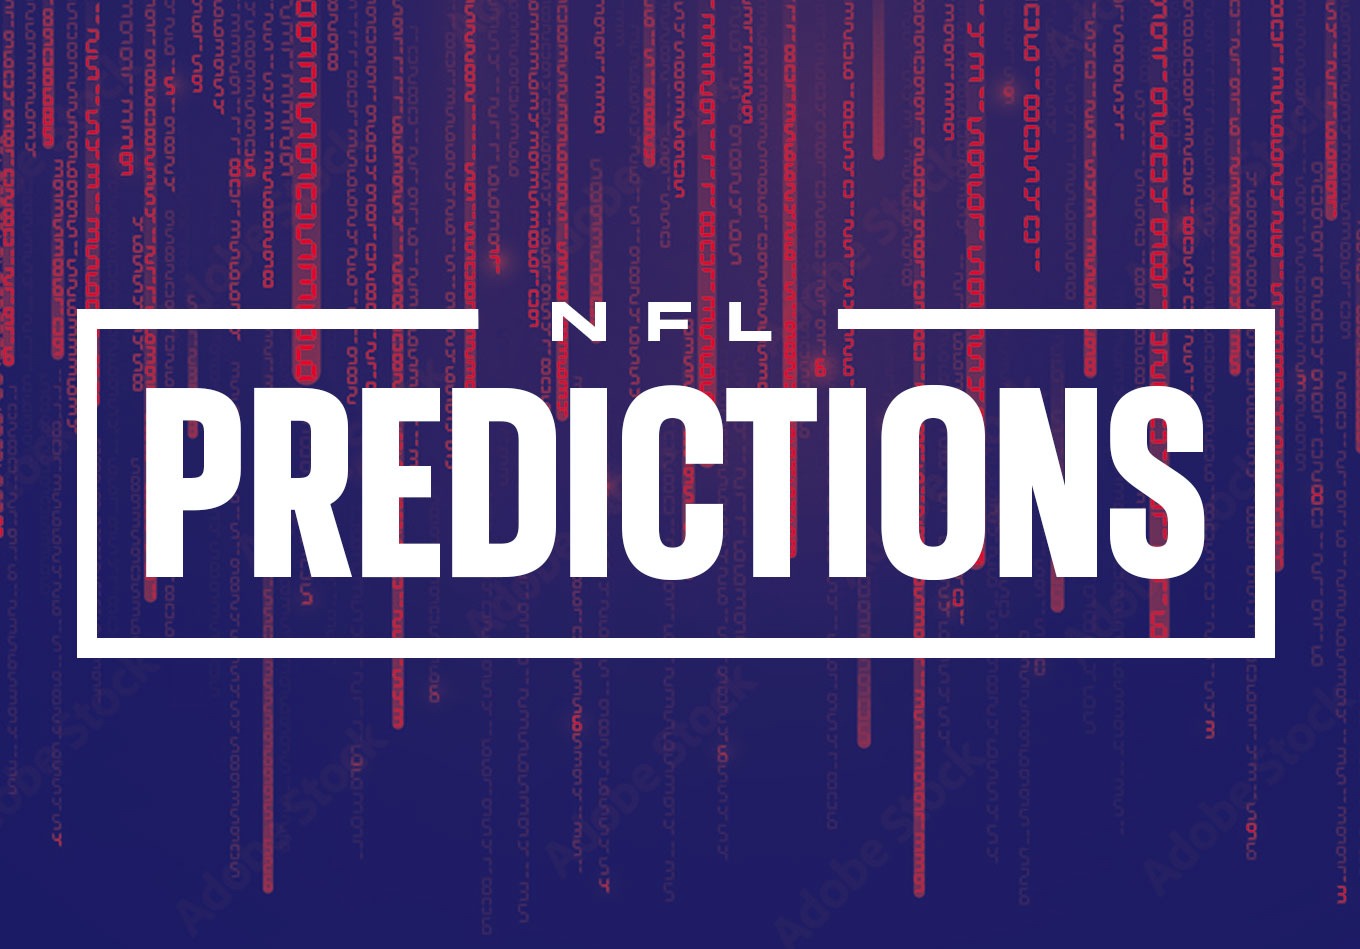 NFL Week 13 Predictions